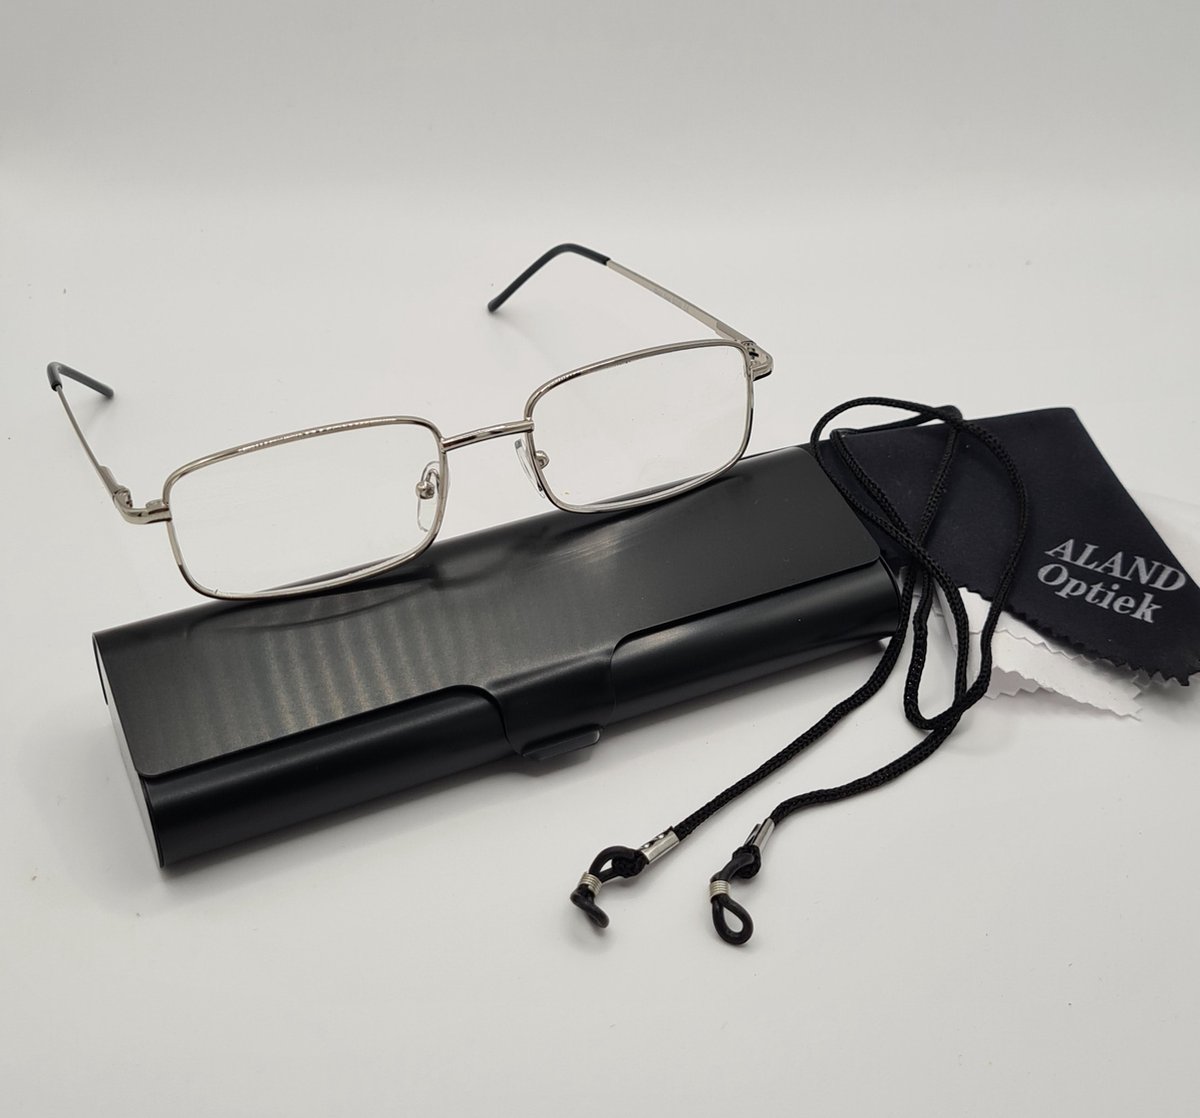 Unisex leesbril +1,0 met brillenkoker + koord + microvezeldoekje / class one 5000 / zilver / +1.0 lunettes de lecture avec étui pratique, cordon et chiffon de nettoyage pour lentilles / Aland optiek